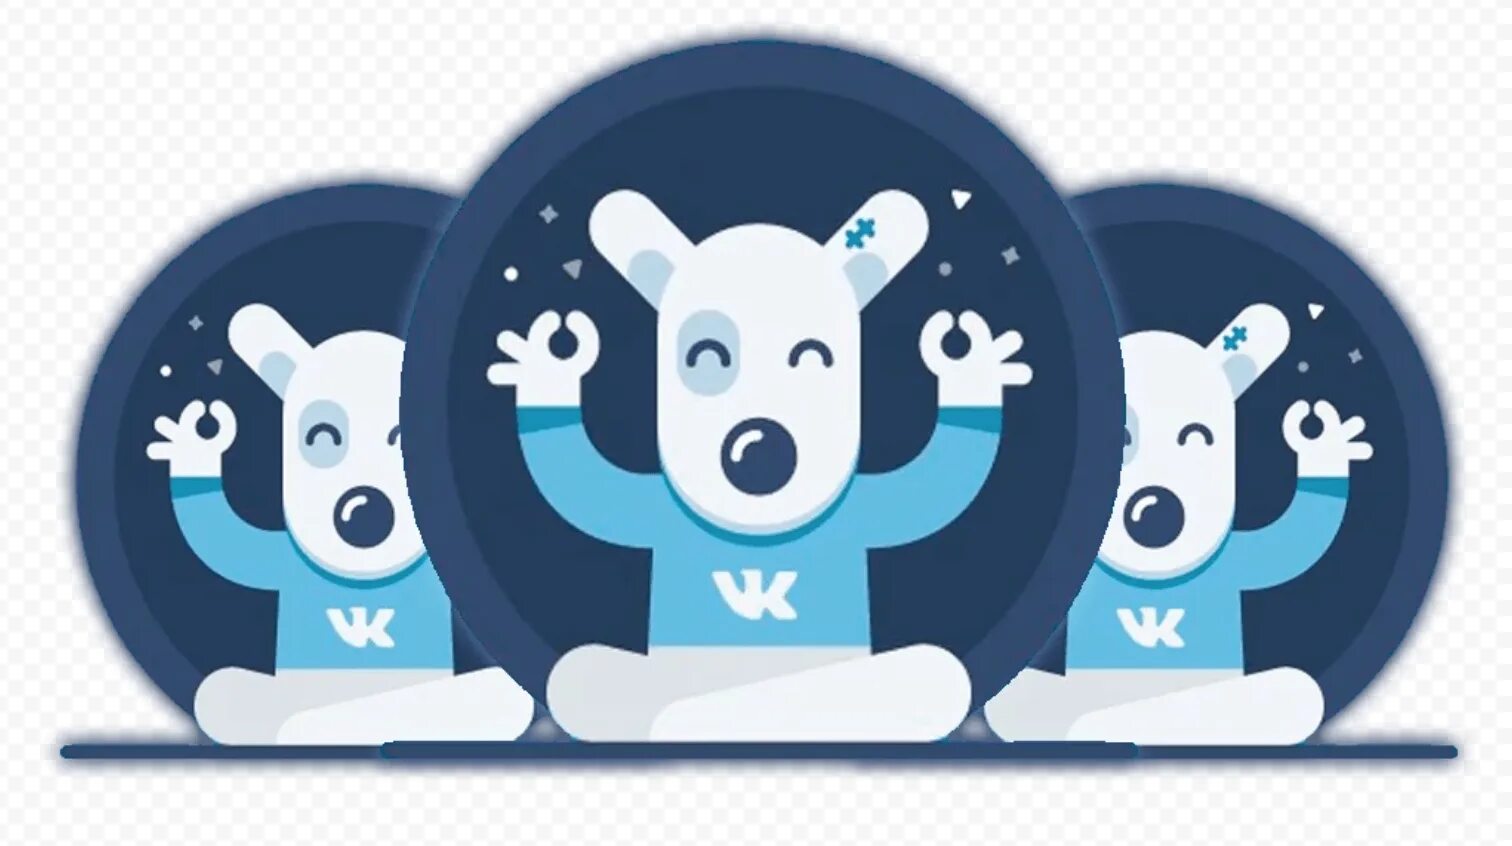 Https vk art. ВК. Значки для группы ВК. ВКОНТАКТЕ собака логотип. Изображение ВК.